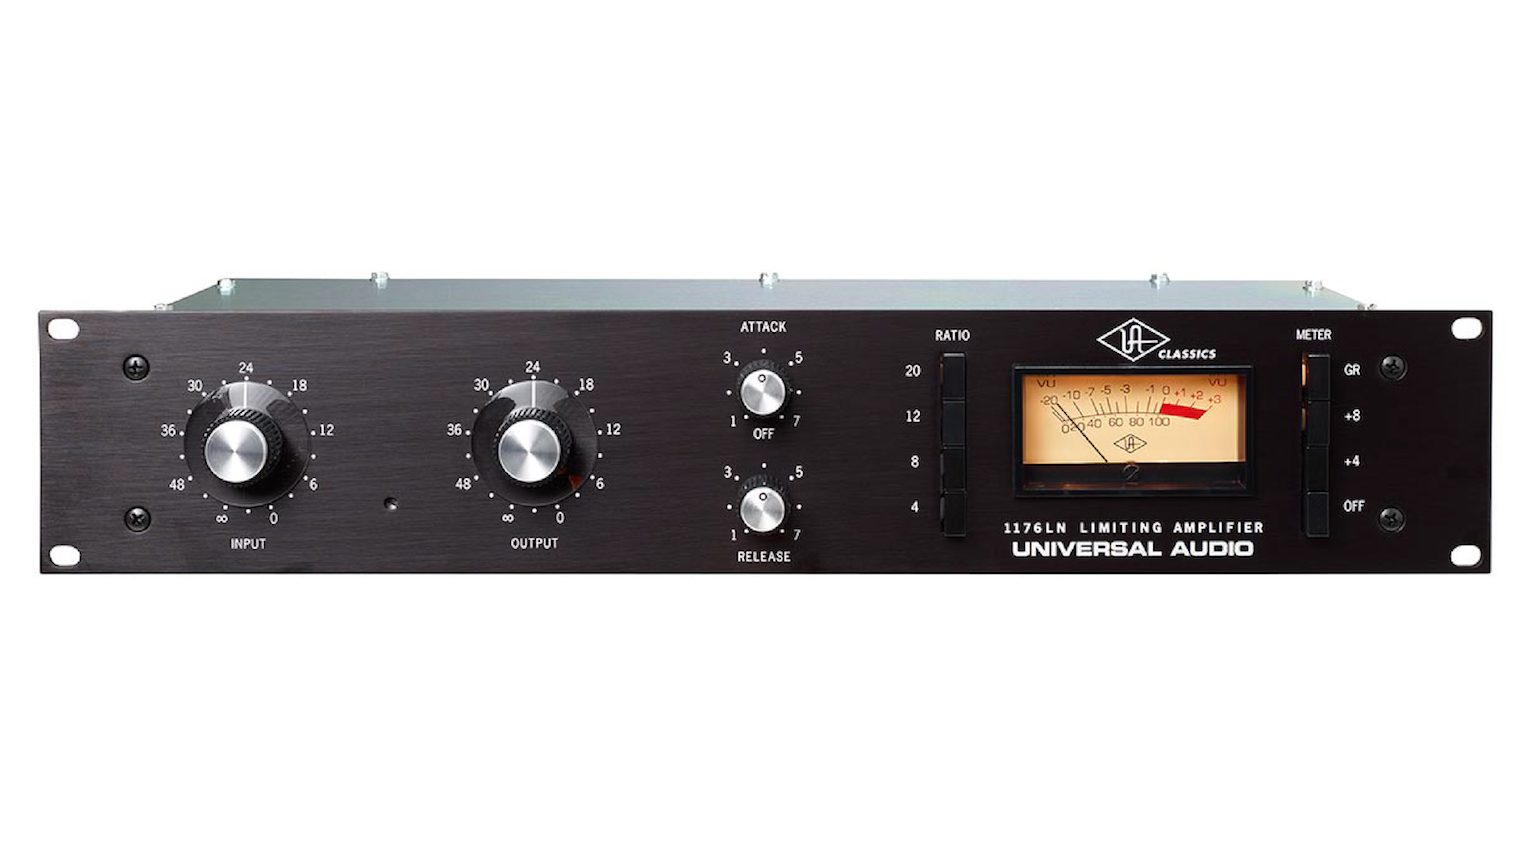 Universal Audio ha riproposto il modello 1176LN nel 2000